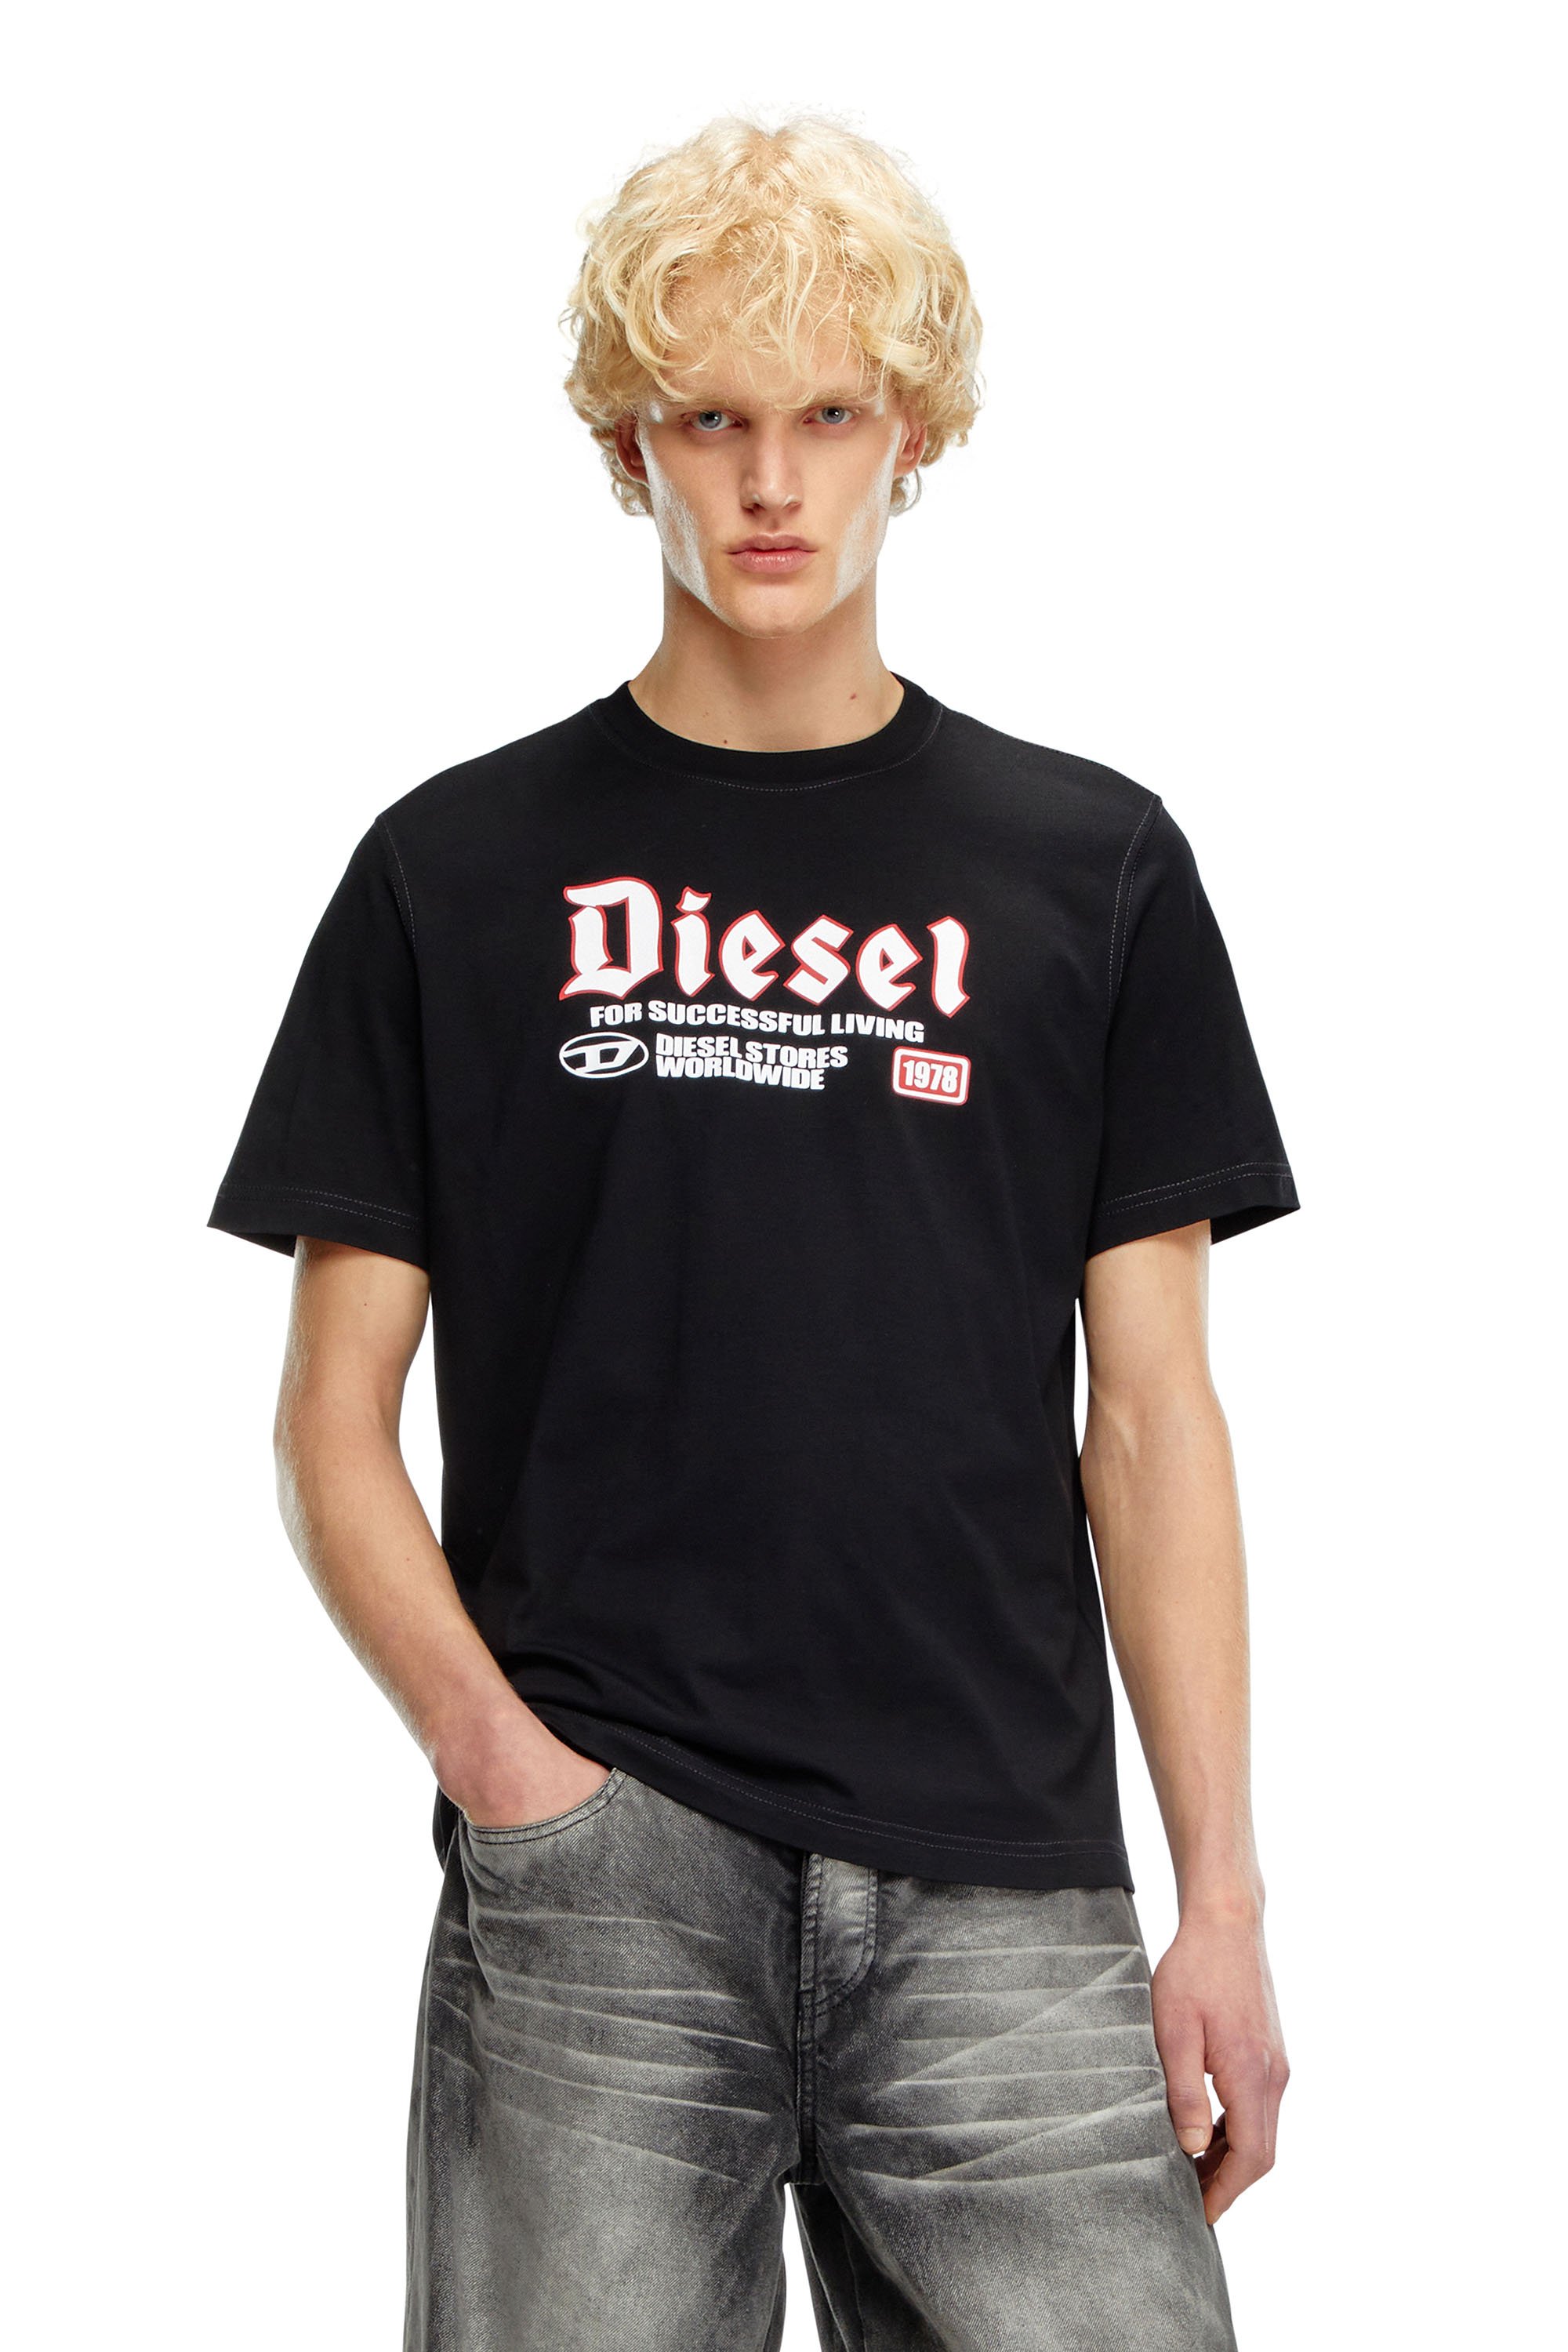 Diesel - T-ADJUST-K1, Homme T-shirt avec imprimé Diesel floqué in Noir - Image 1